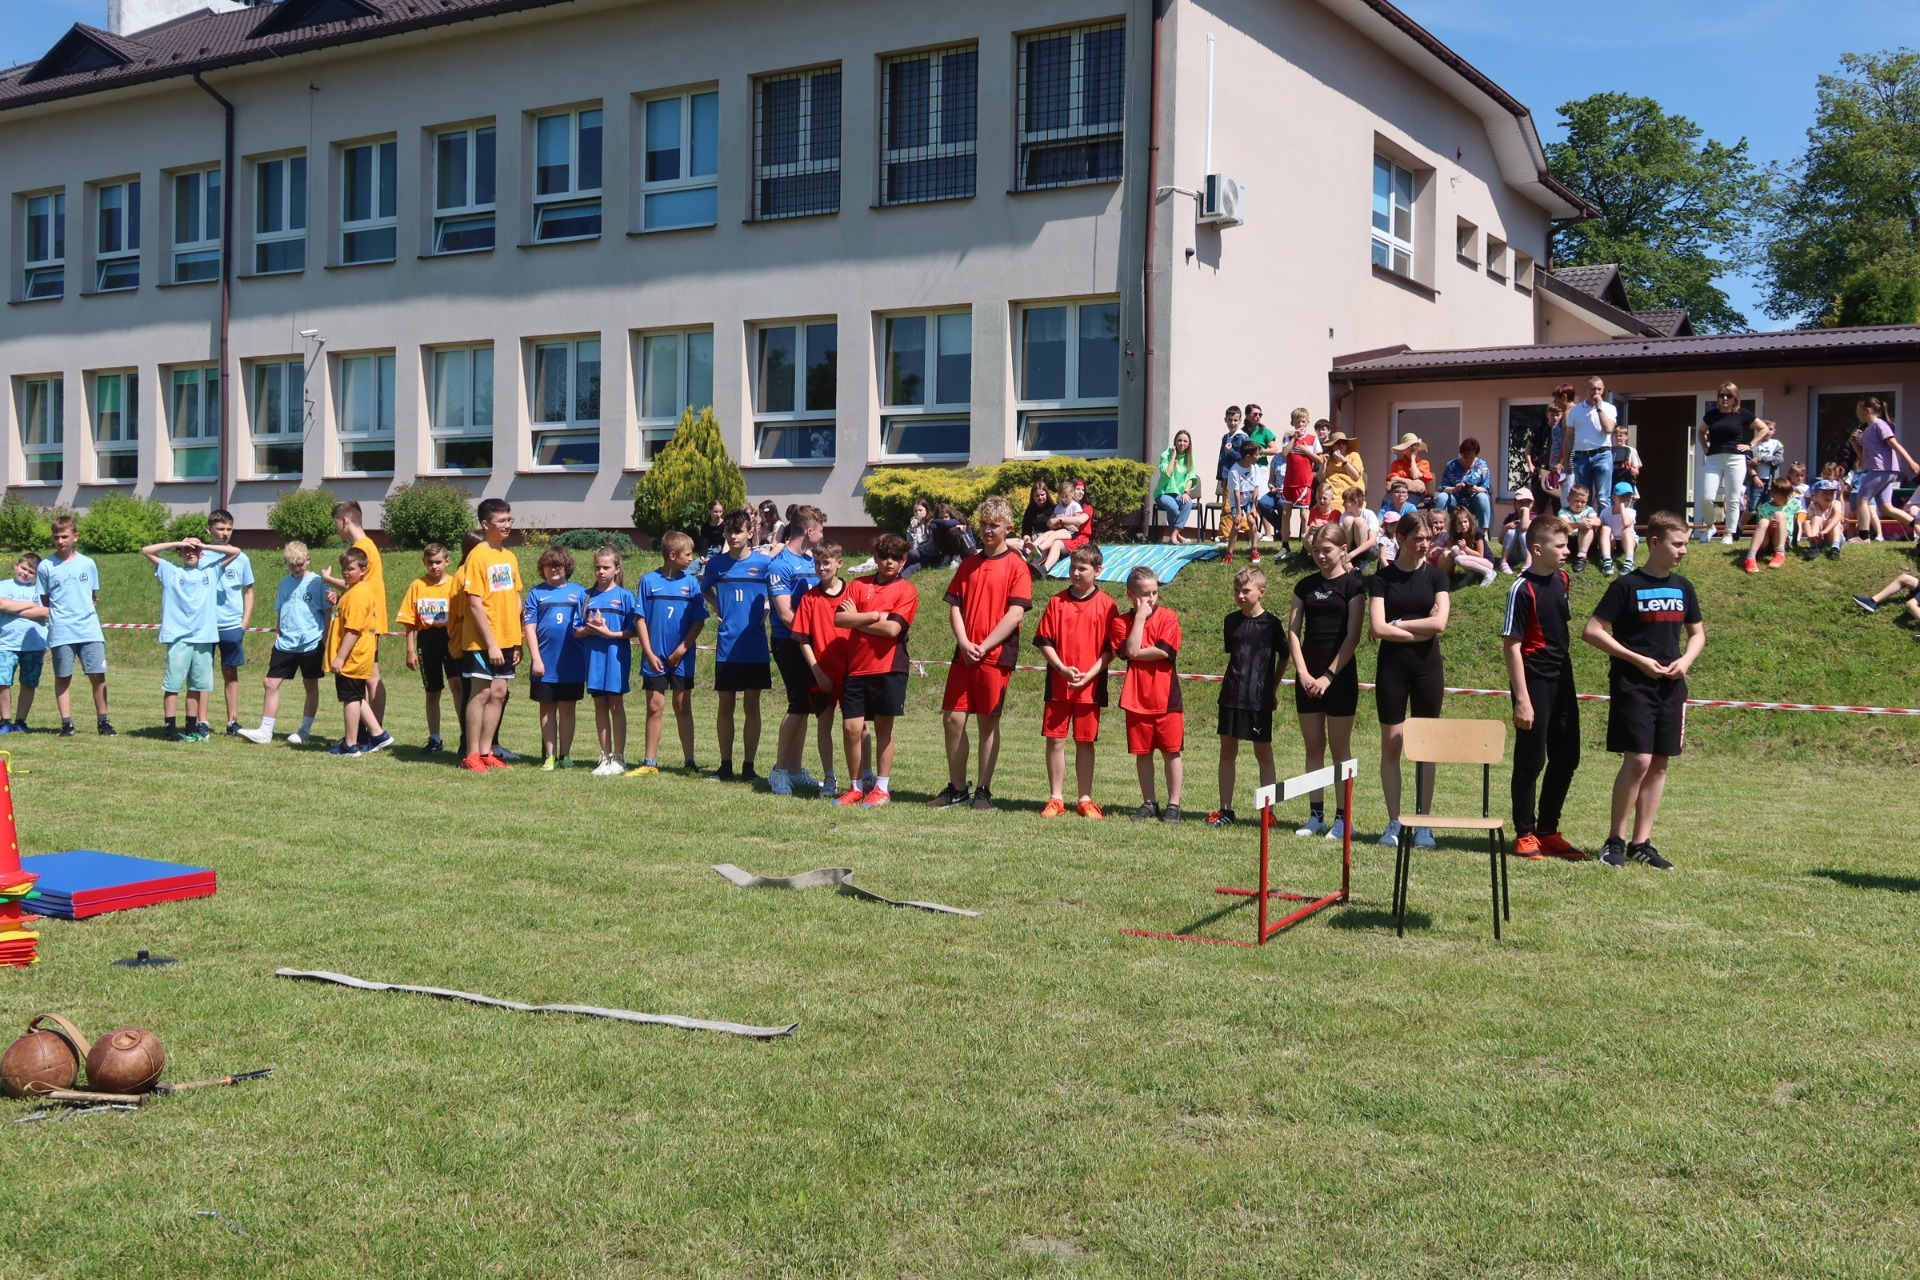 Uczniowie rywalizujący w turnieju drużynowym - Dzień Dziecka na Sportowo